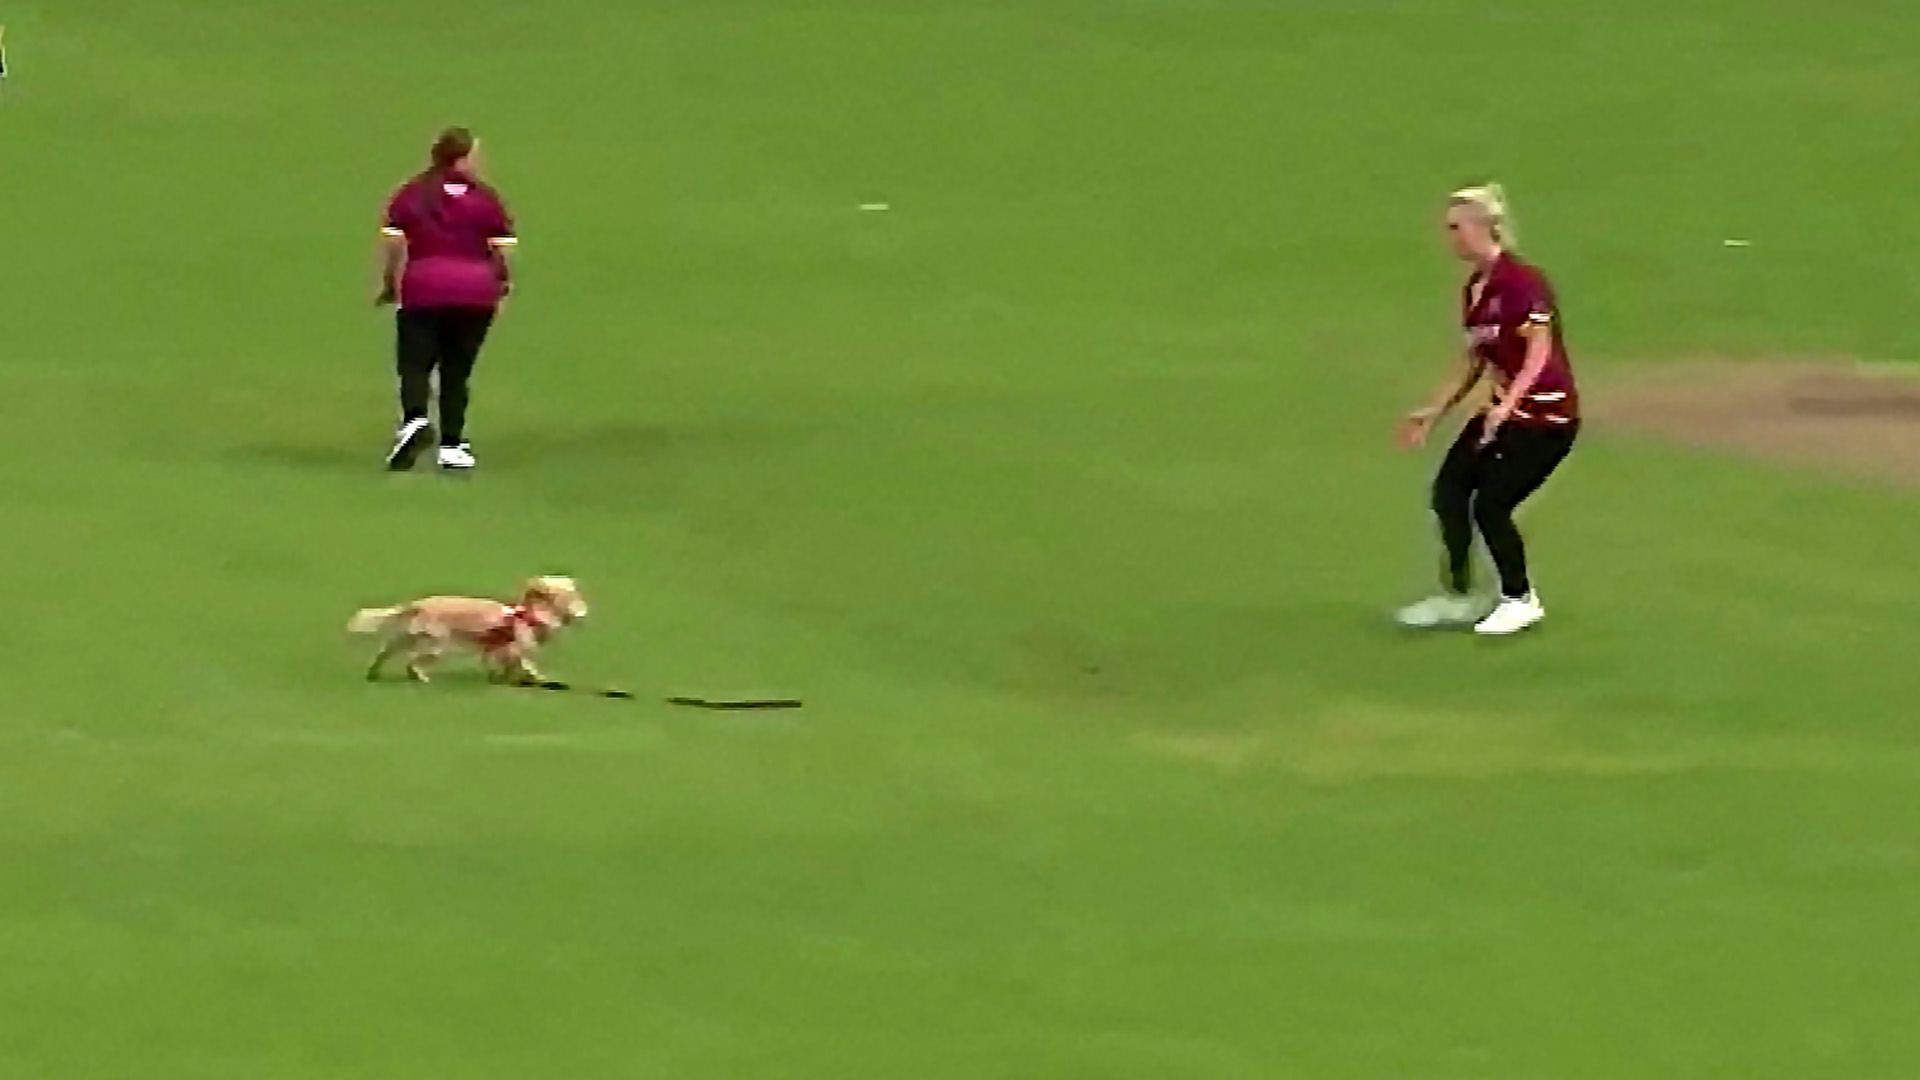 Puppy disrupts women's cricket match in Northern Ireland